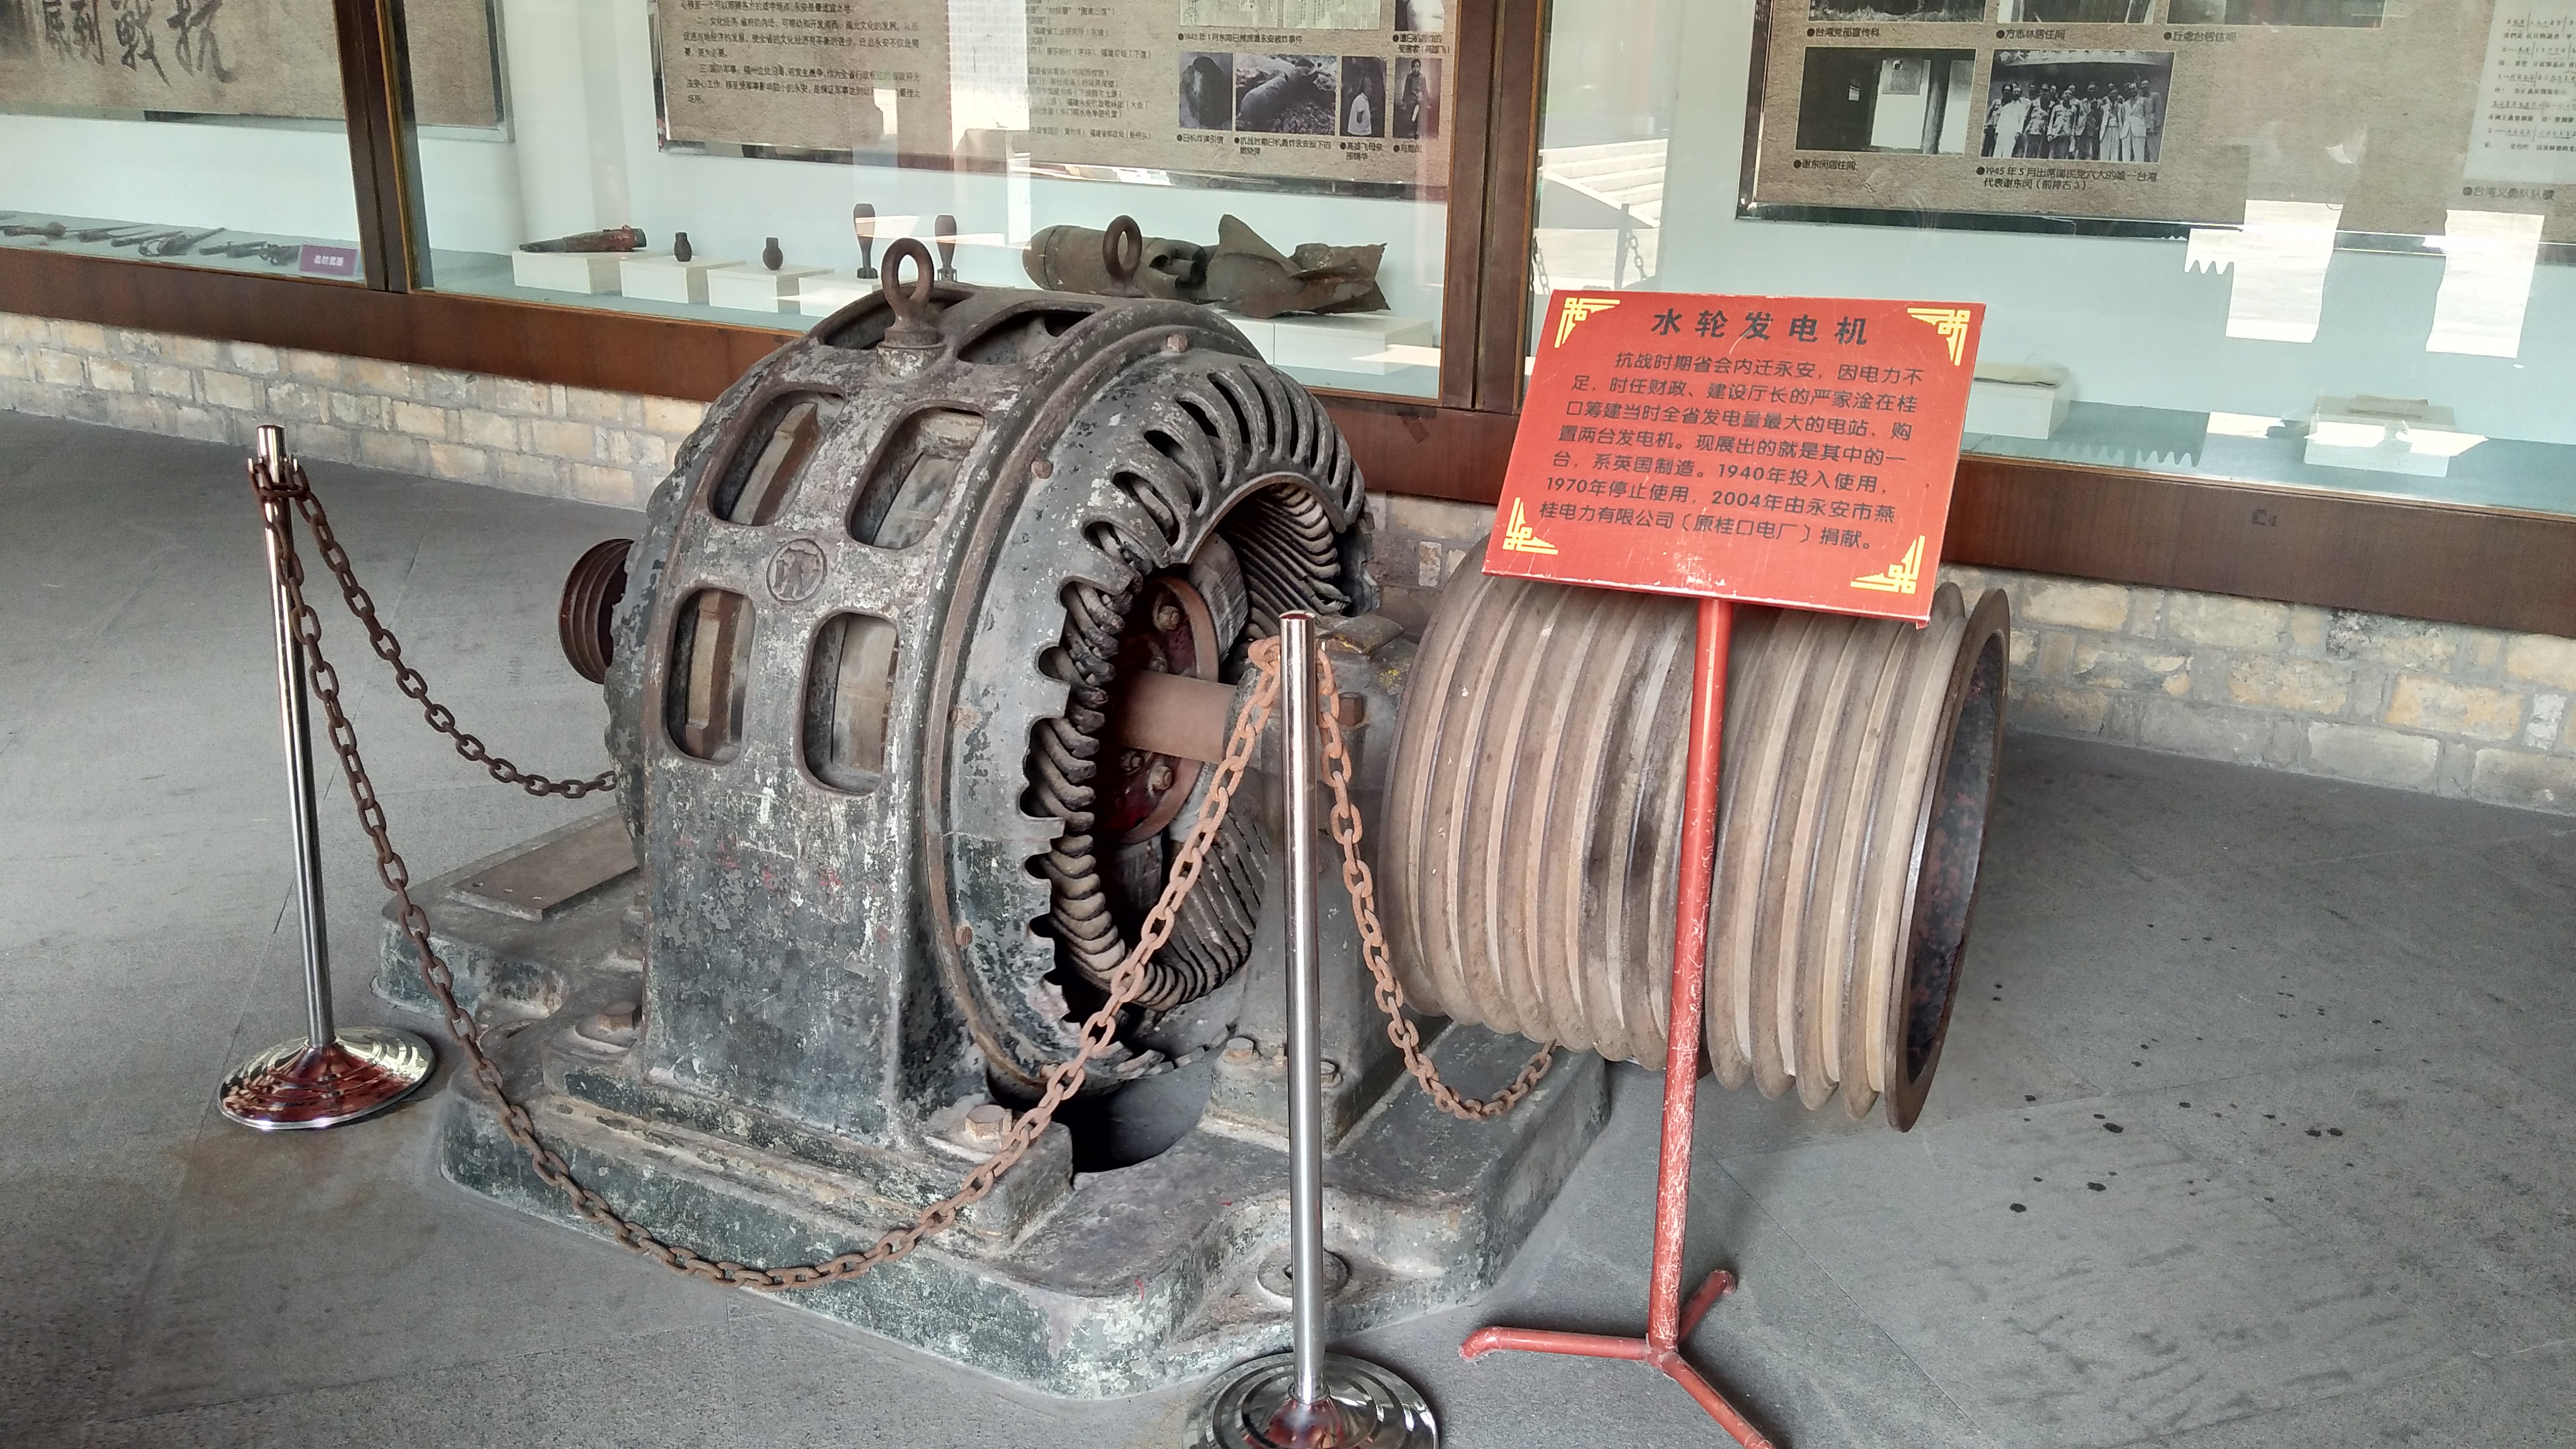 永安市博物馆展出的抗战时期使用的手摇踏板印刷机文庙历史上多次修葺